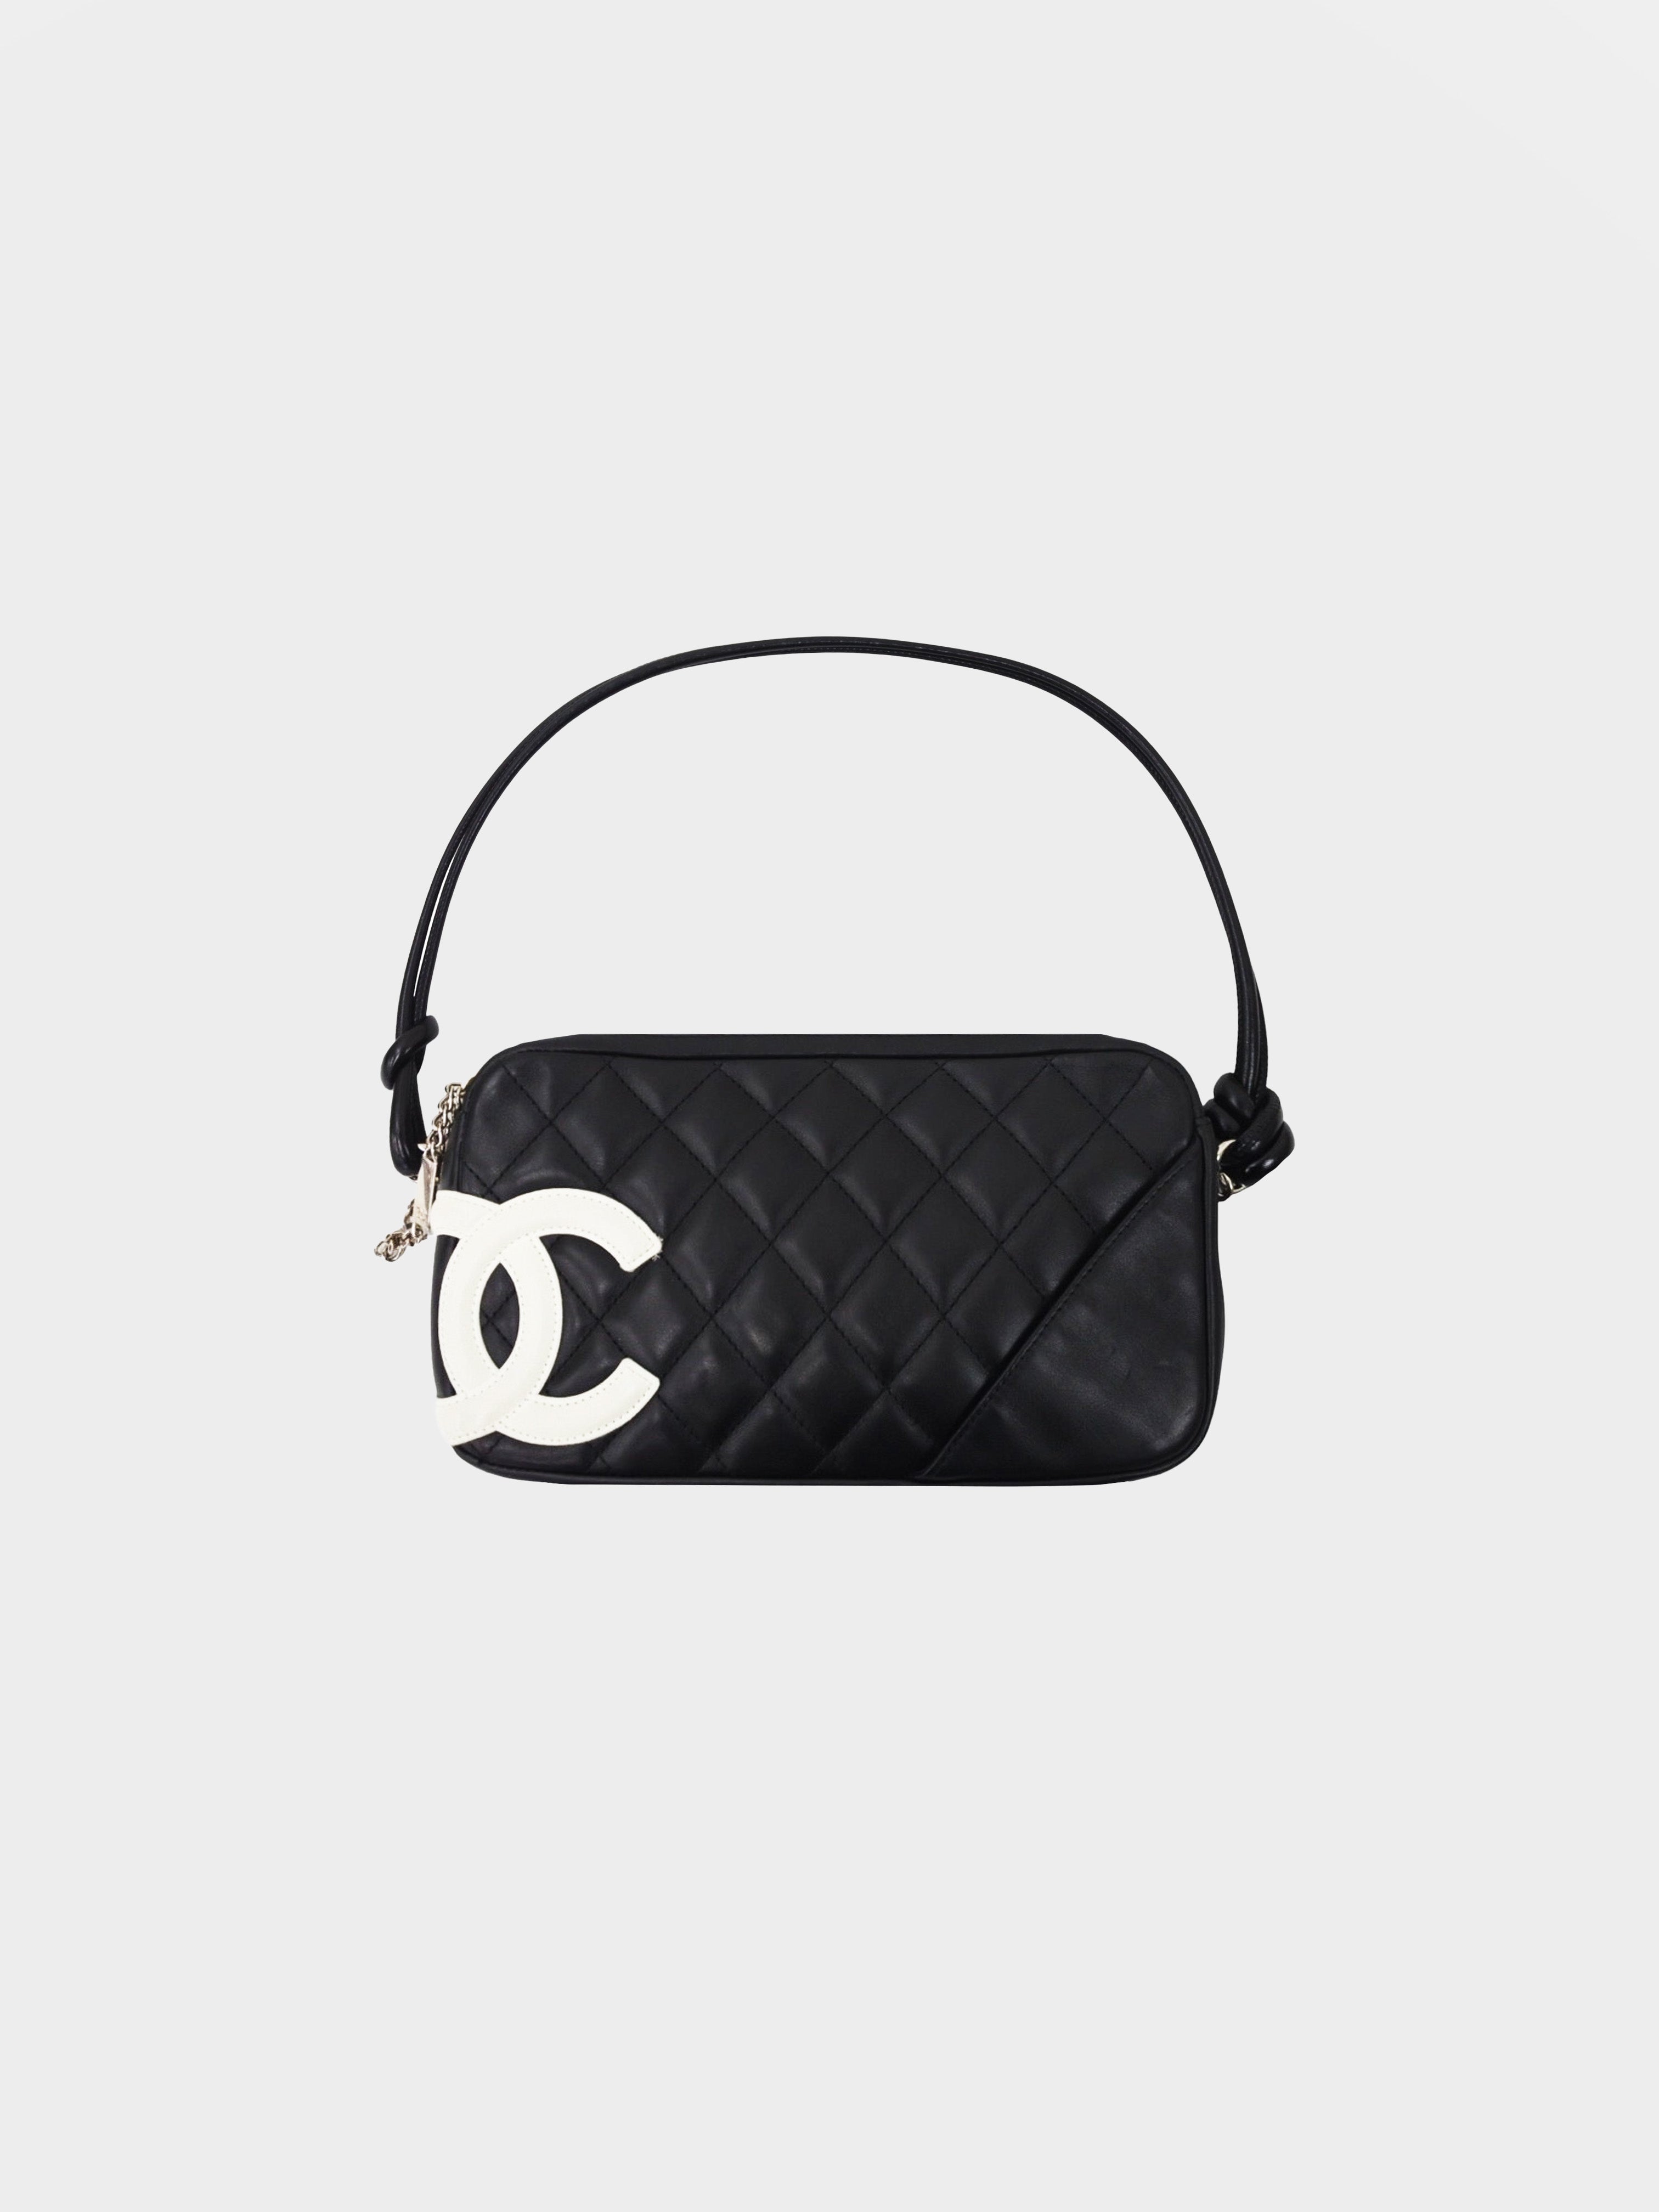 Chanel 2005 Cambon Pouchette Bag · INTO